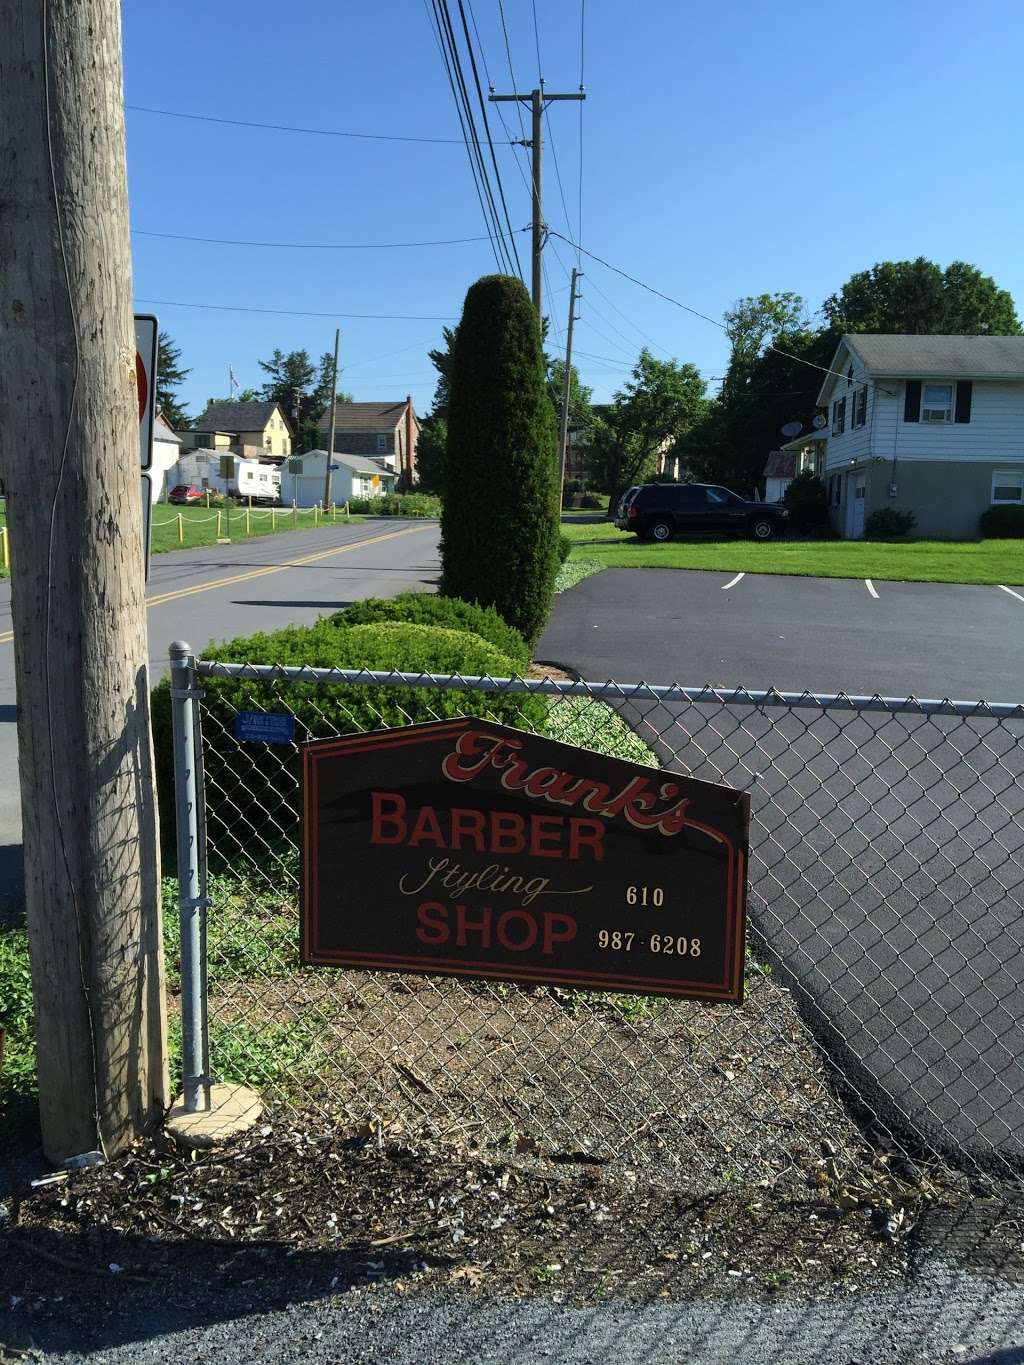 Frank & Josies Barbershop | 17 Deturk Rd, Oley, PA 19547 | Phone: (610) 987-6208